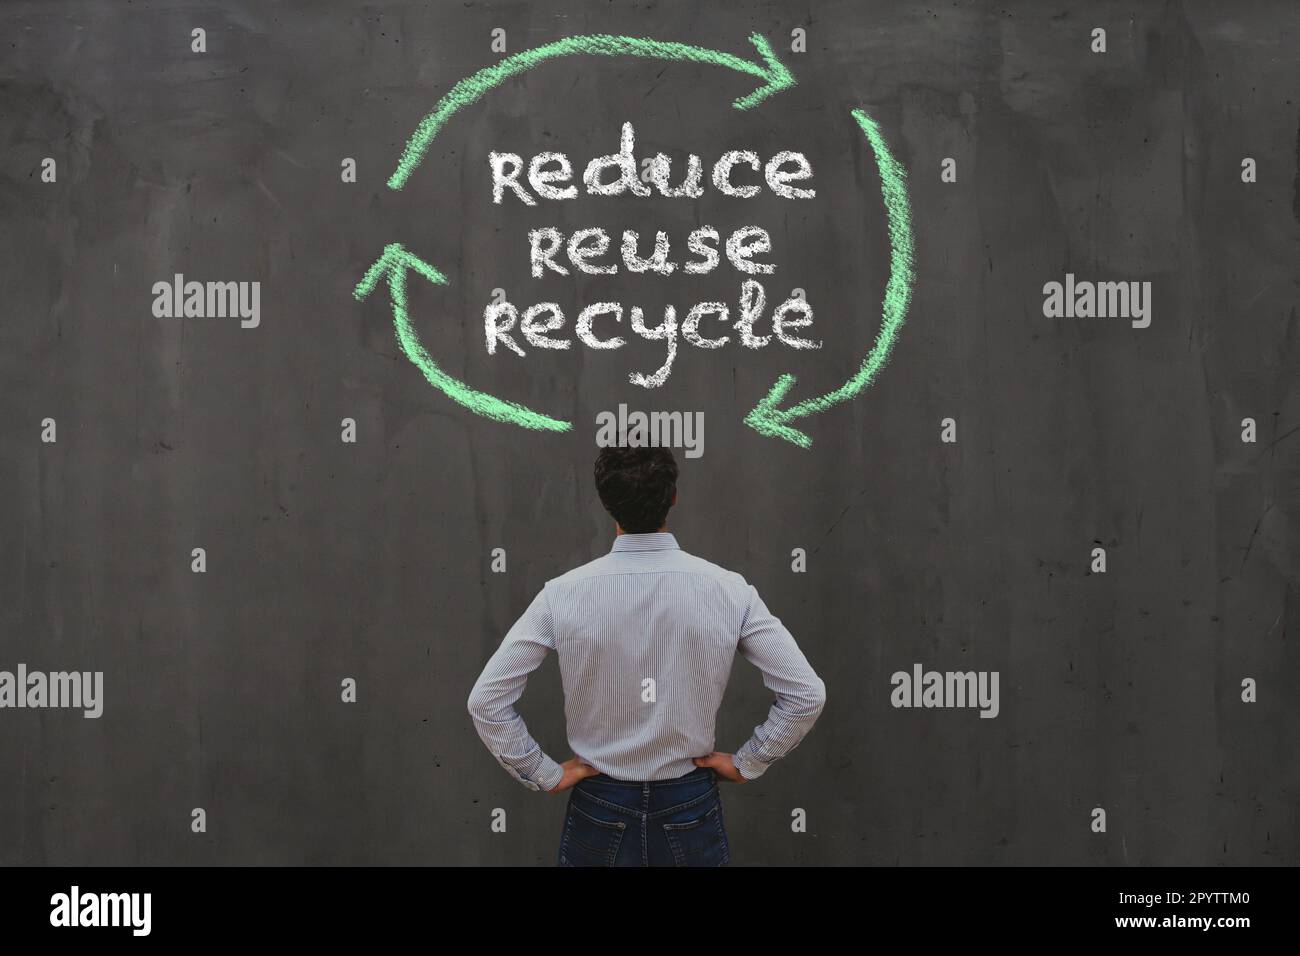 réduction de la réutilisation, recyclage, concept de développement durable Banque D'Images